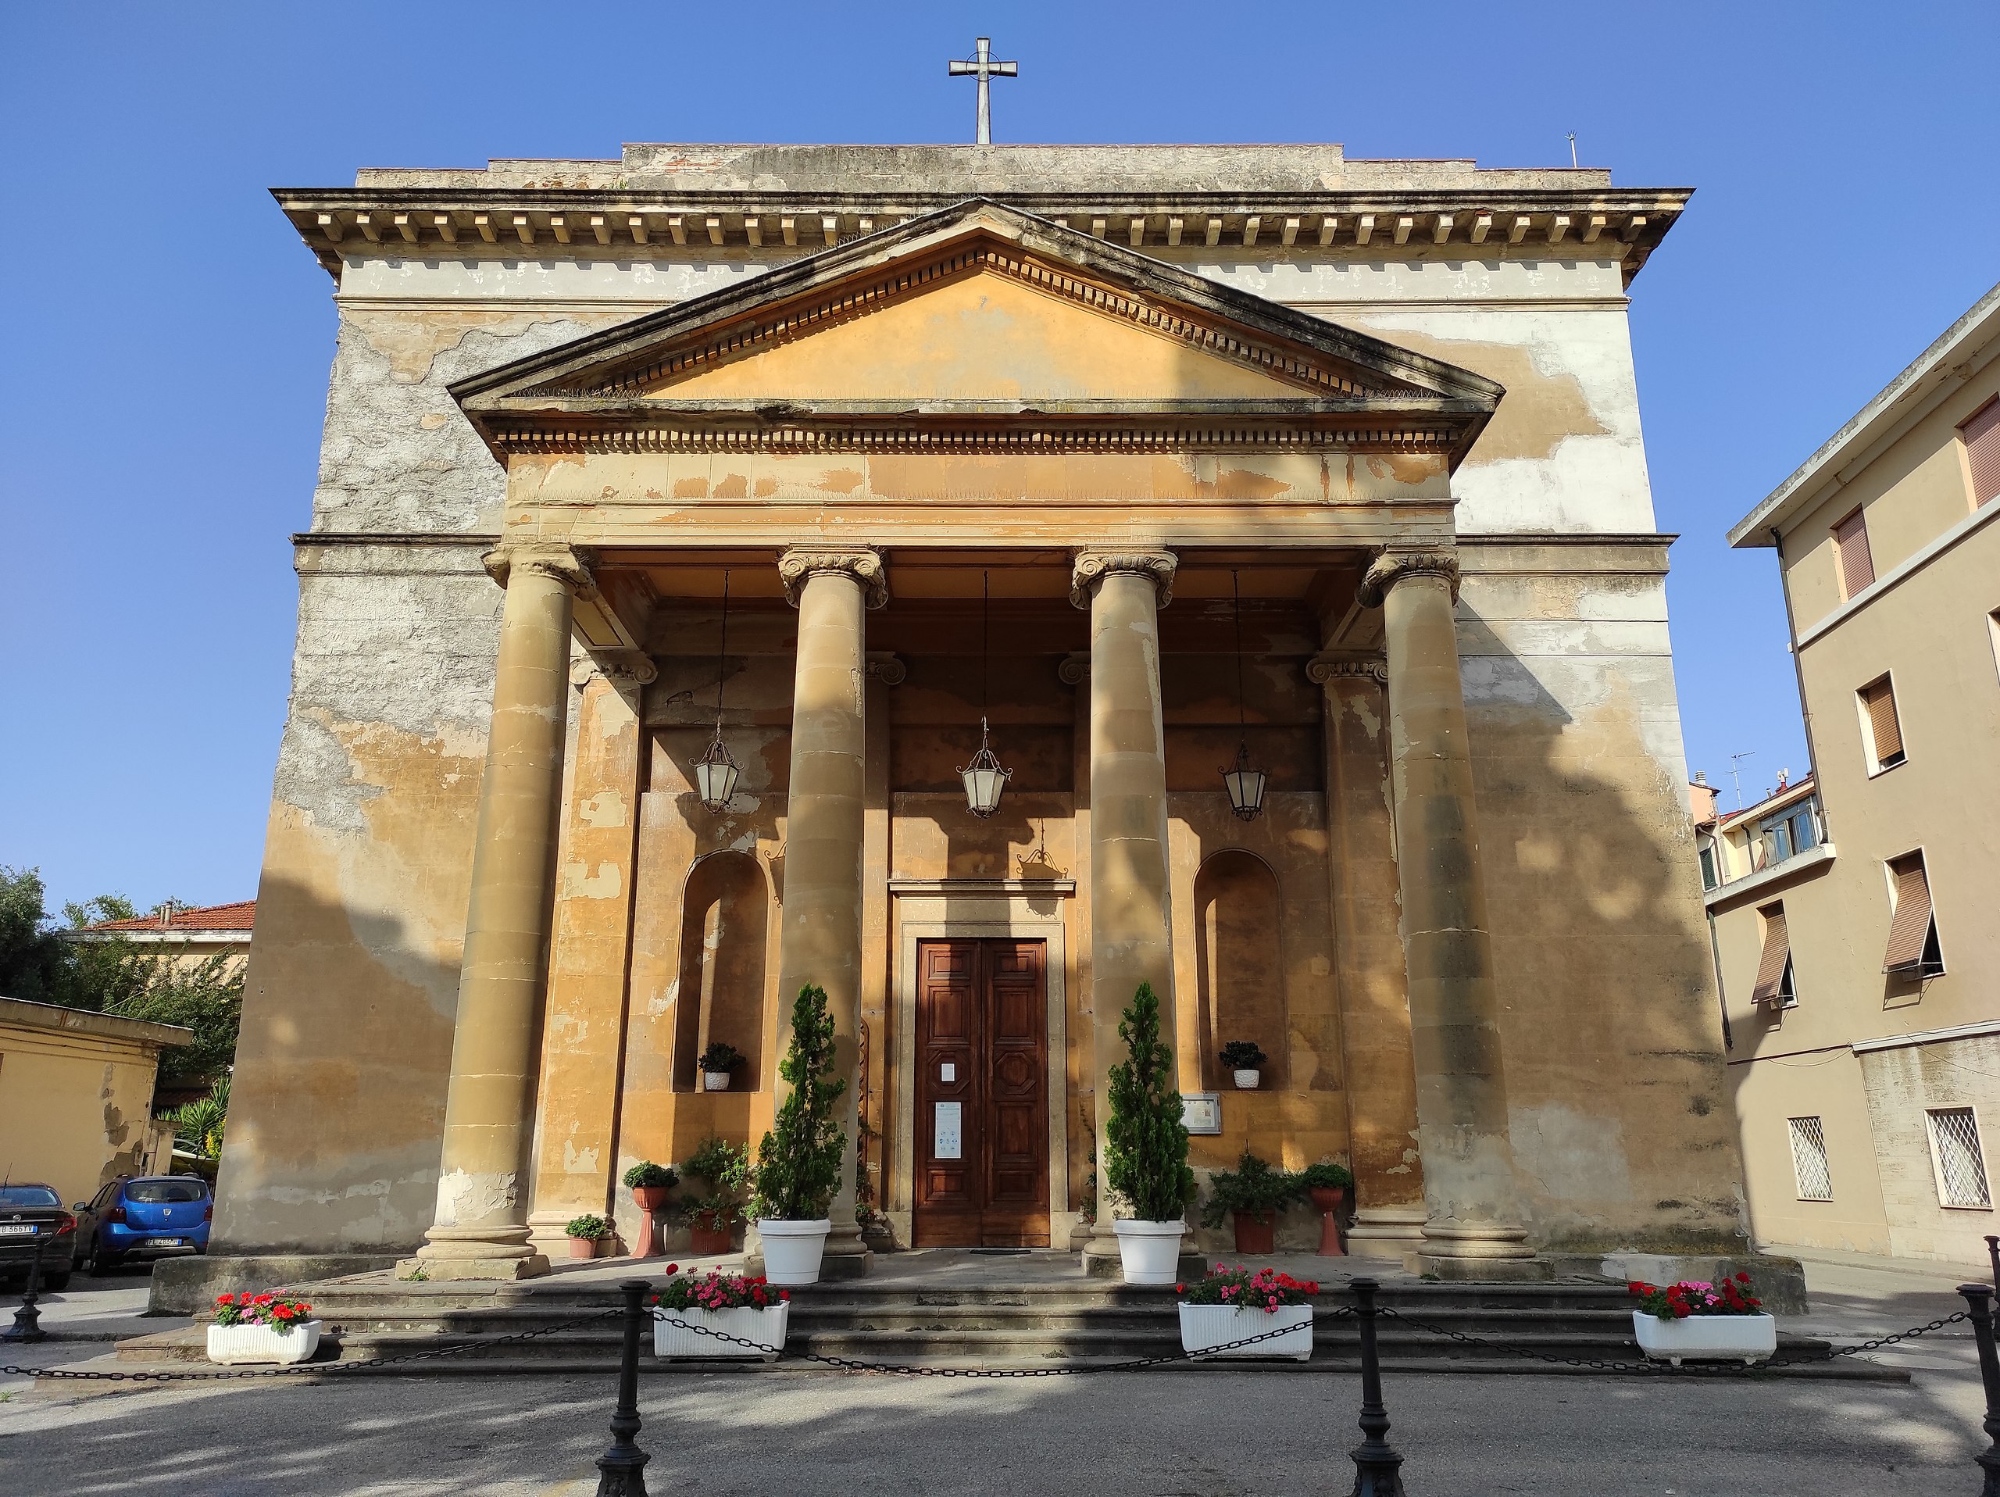 The Anglican Church in Livorno